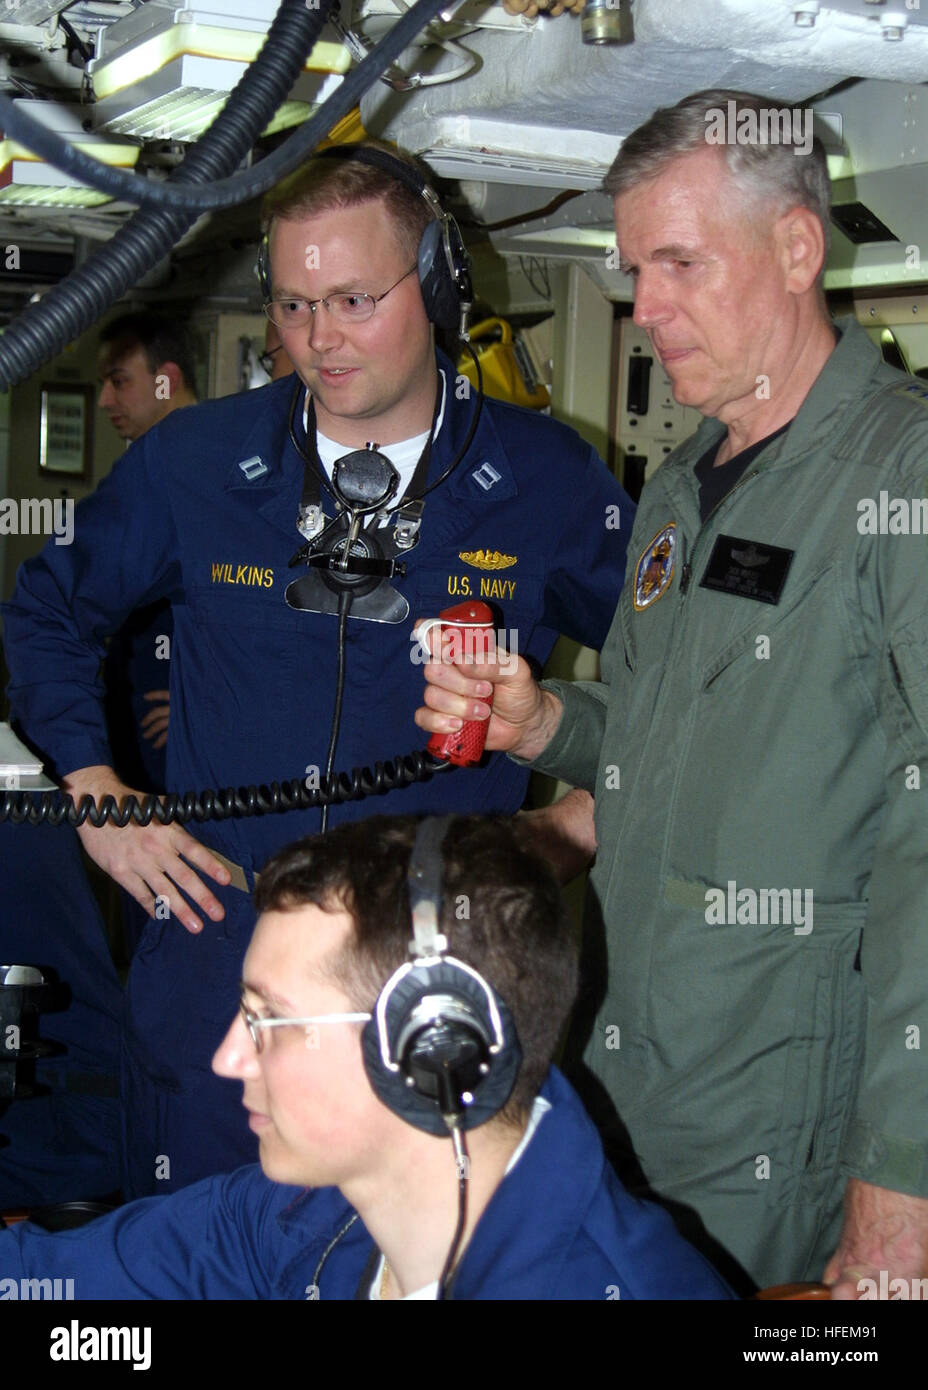 030628-N-2903 K-002 auf hoher See an Bord der USS Rhode Island (SSBN 740) 28. Juni 2003--General Richard B. Myers Vorsitzender der Joint Chiefs Of Staff, beteiligt sich an der Rakete Leitstelle während einer Schlacht Stationen training Übung an Bord der ballistischen Raketen-u-Boot USS Rhode Island (SSBN-740).  Foto: U.S. Navy Journalist 3. Klasse B.L. Keller.  (FREIGEGEBEN) US Navy 030628-N-2903K-002 General Richard B. Myers Vorsitzender der Joint Chiefs Of Staff, beteiligt sich an der Rakete Leitstelle während einer training Übung an Bord der ballistischen Raketen-u-Boot USS Rhode Island Gefechtsstationen Stockfoto